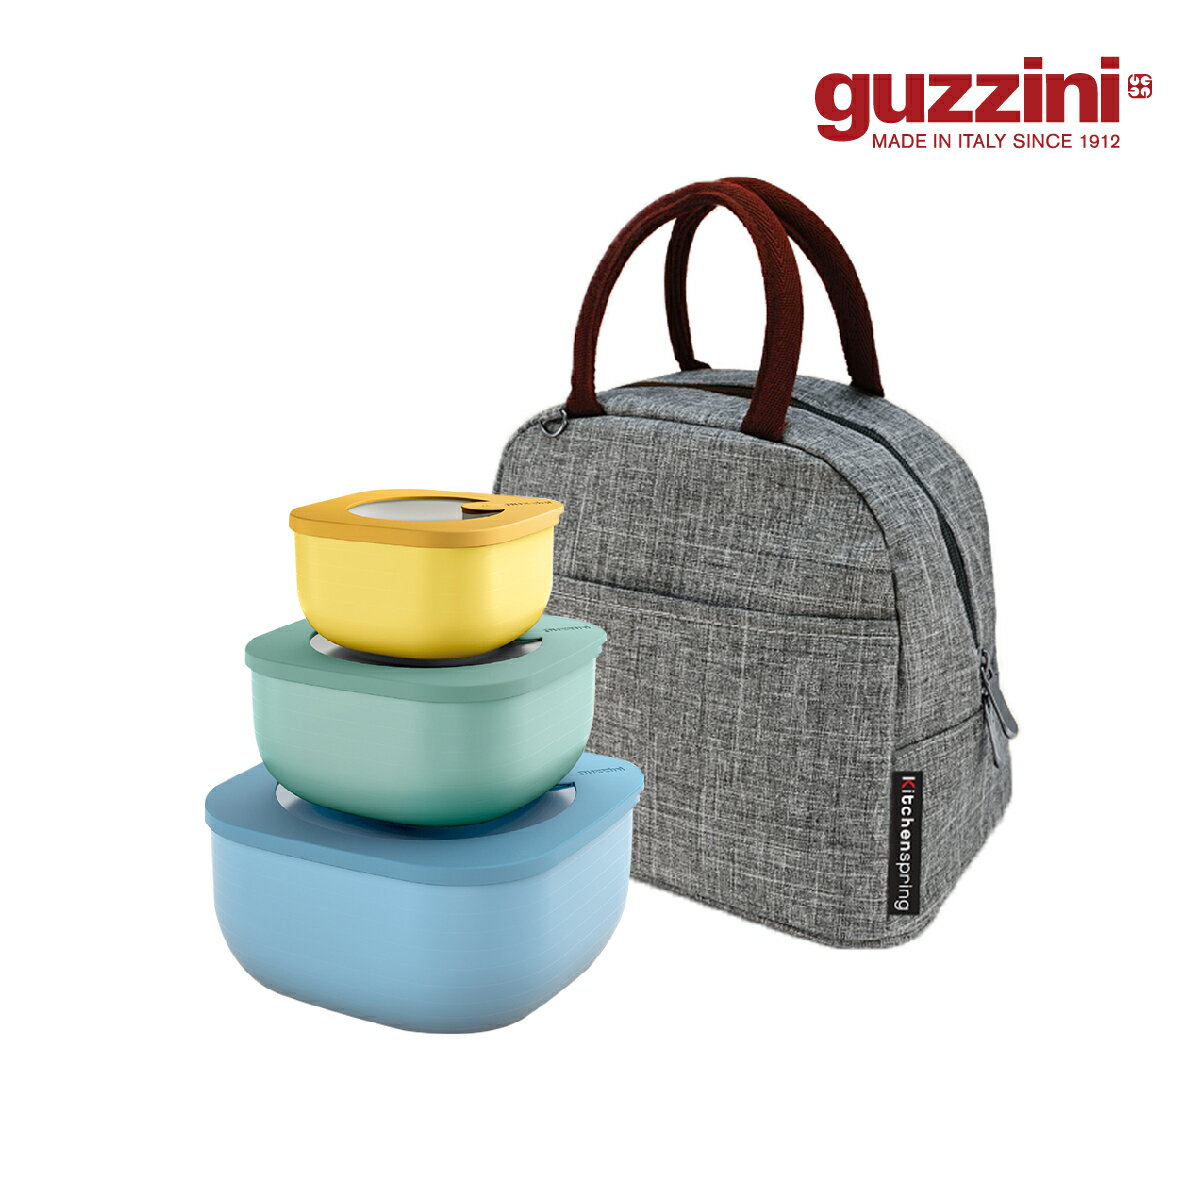 【Guzzini】Store & More系列 淺身常鮮盒 優惠三入套組(黃/綠/藍) 贈 時尚保溫保冷提袋